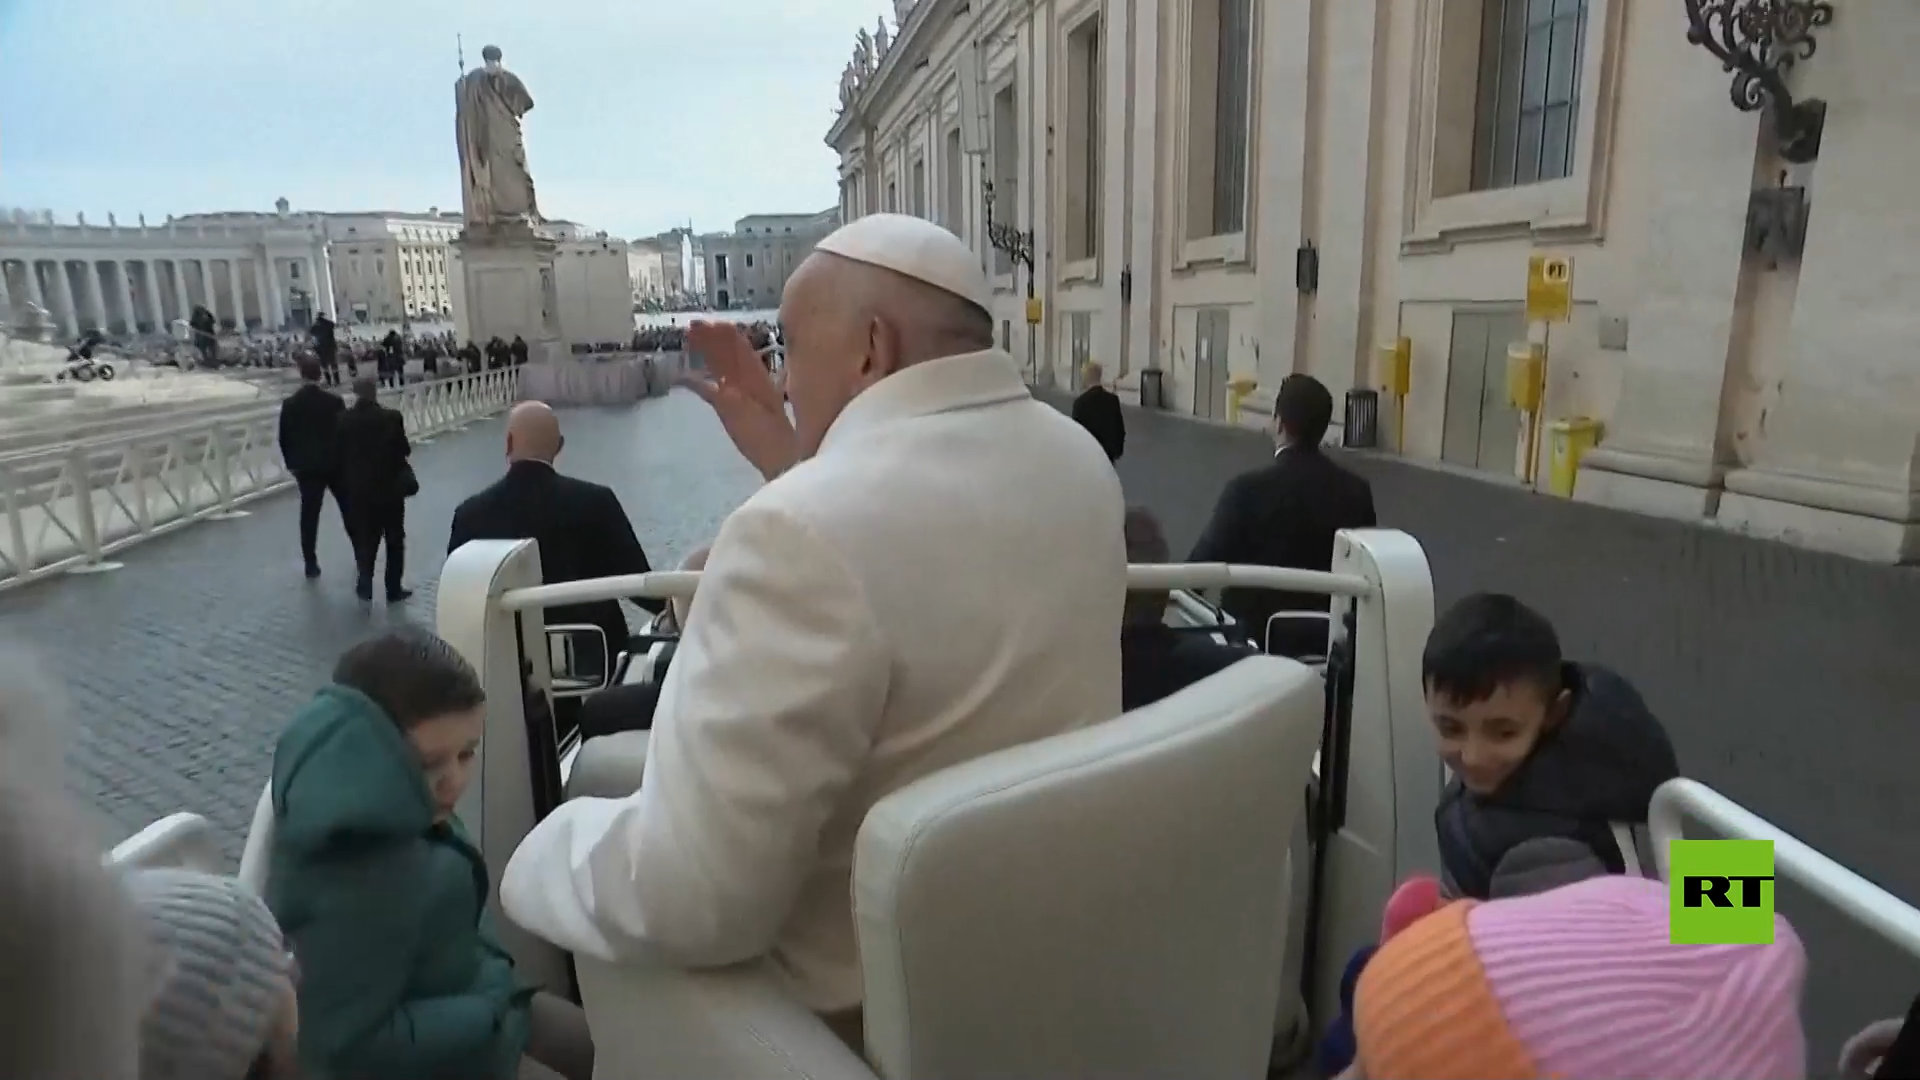 الرياح تنزع قبعة البابا فرنسيس عن رأسه أثناء وصوله إلى ساحة القديس بطرس في الفاتيكان